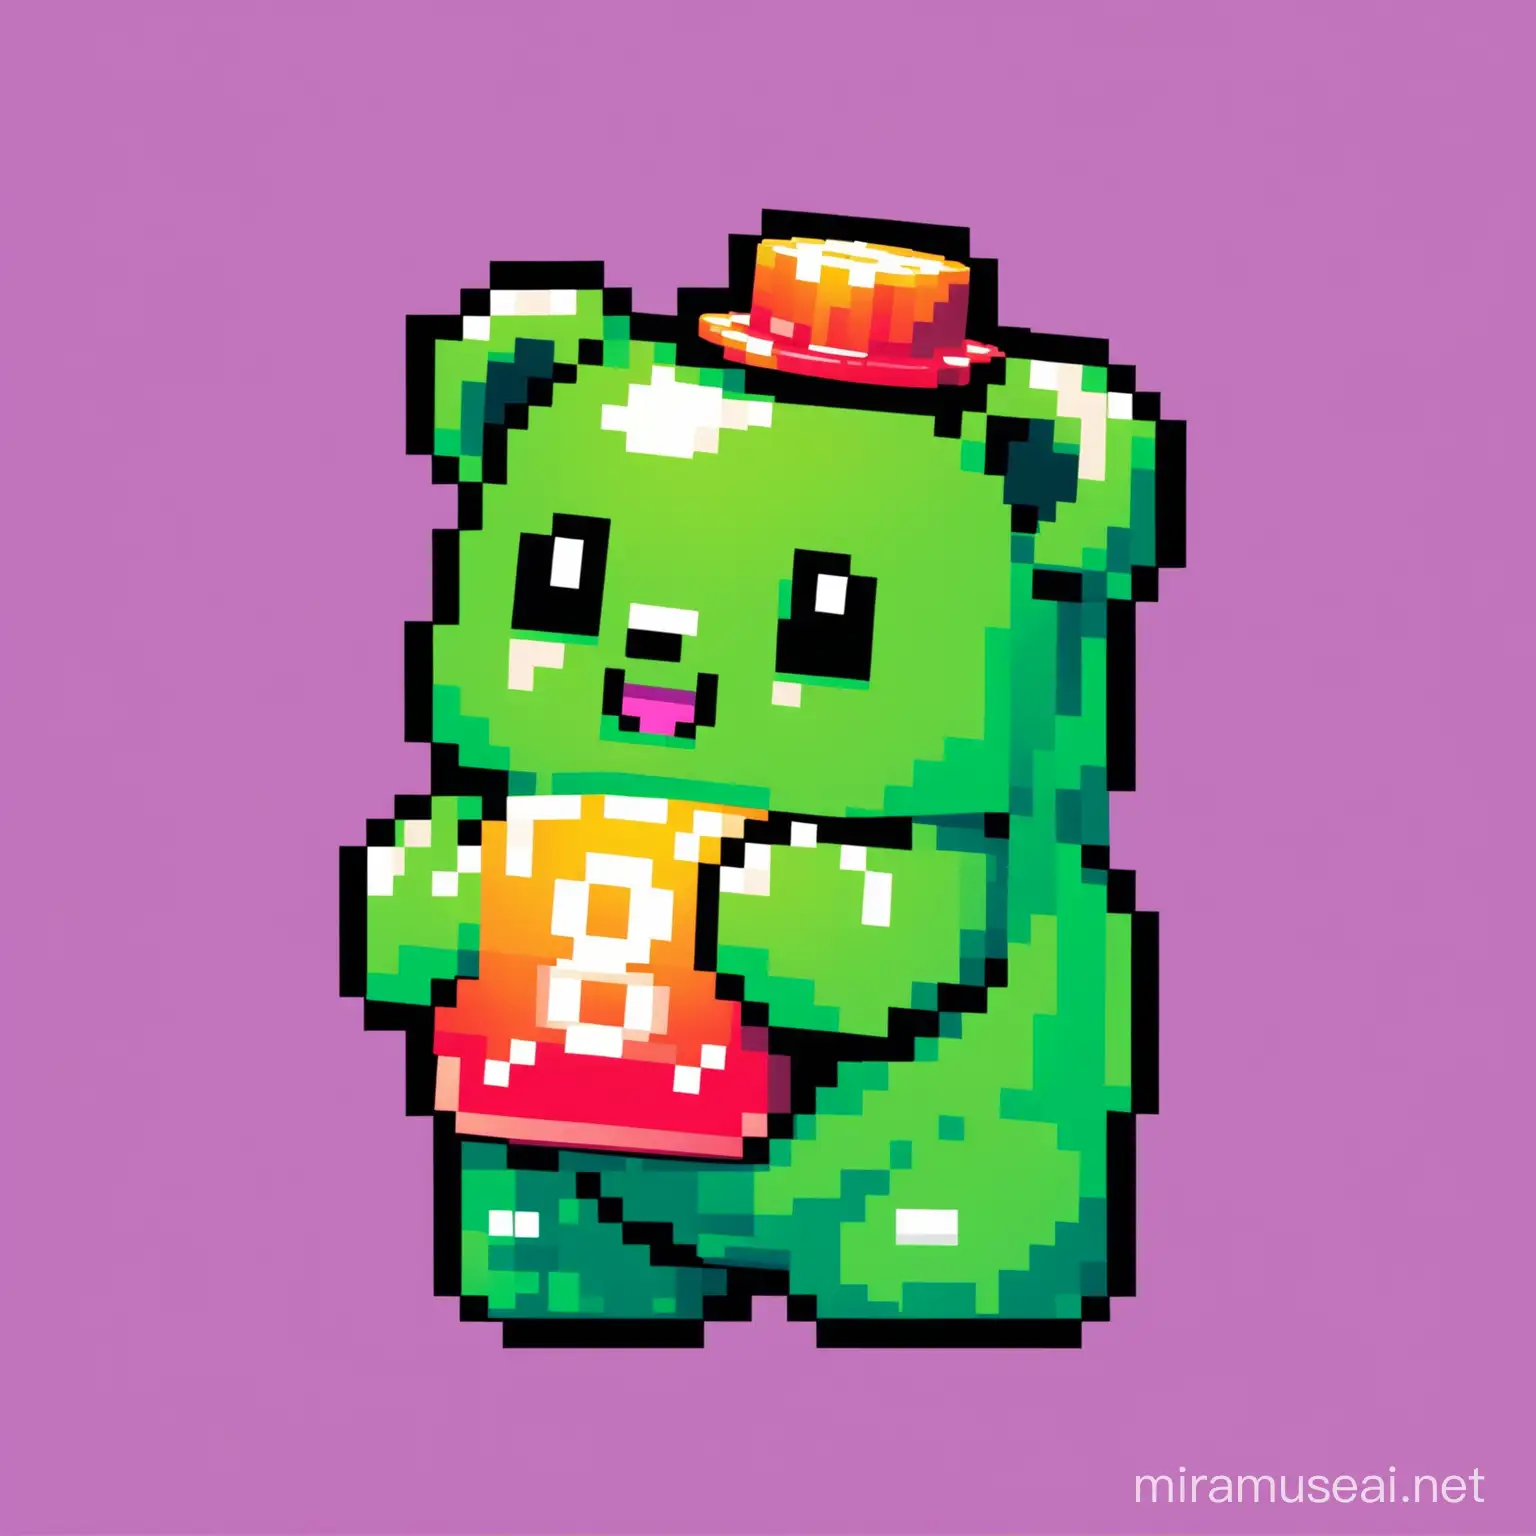 Cute 8Bit gummy bear Mascot for Crypto Meme Token